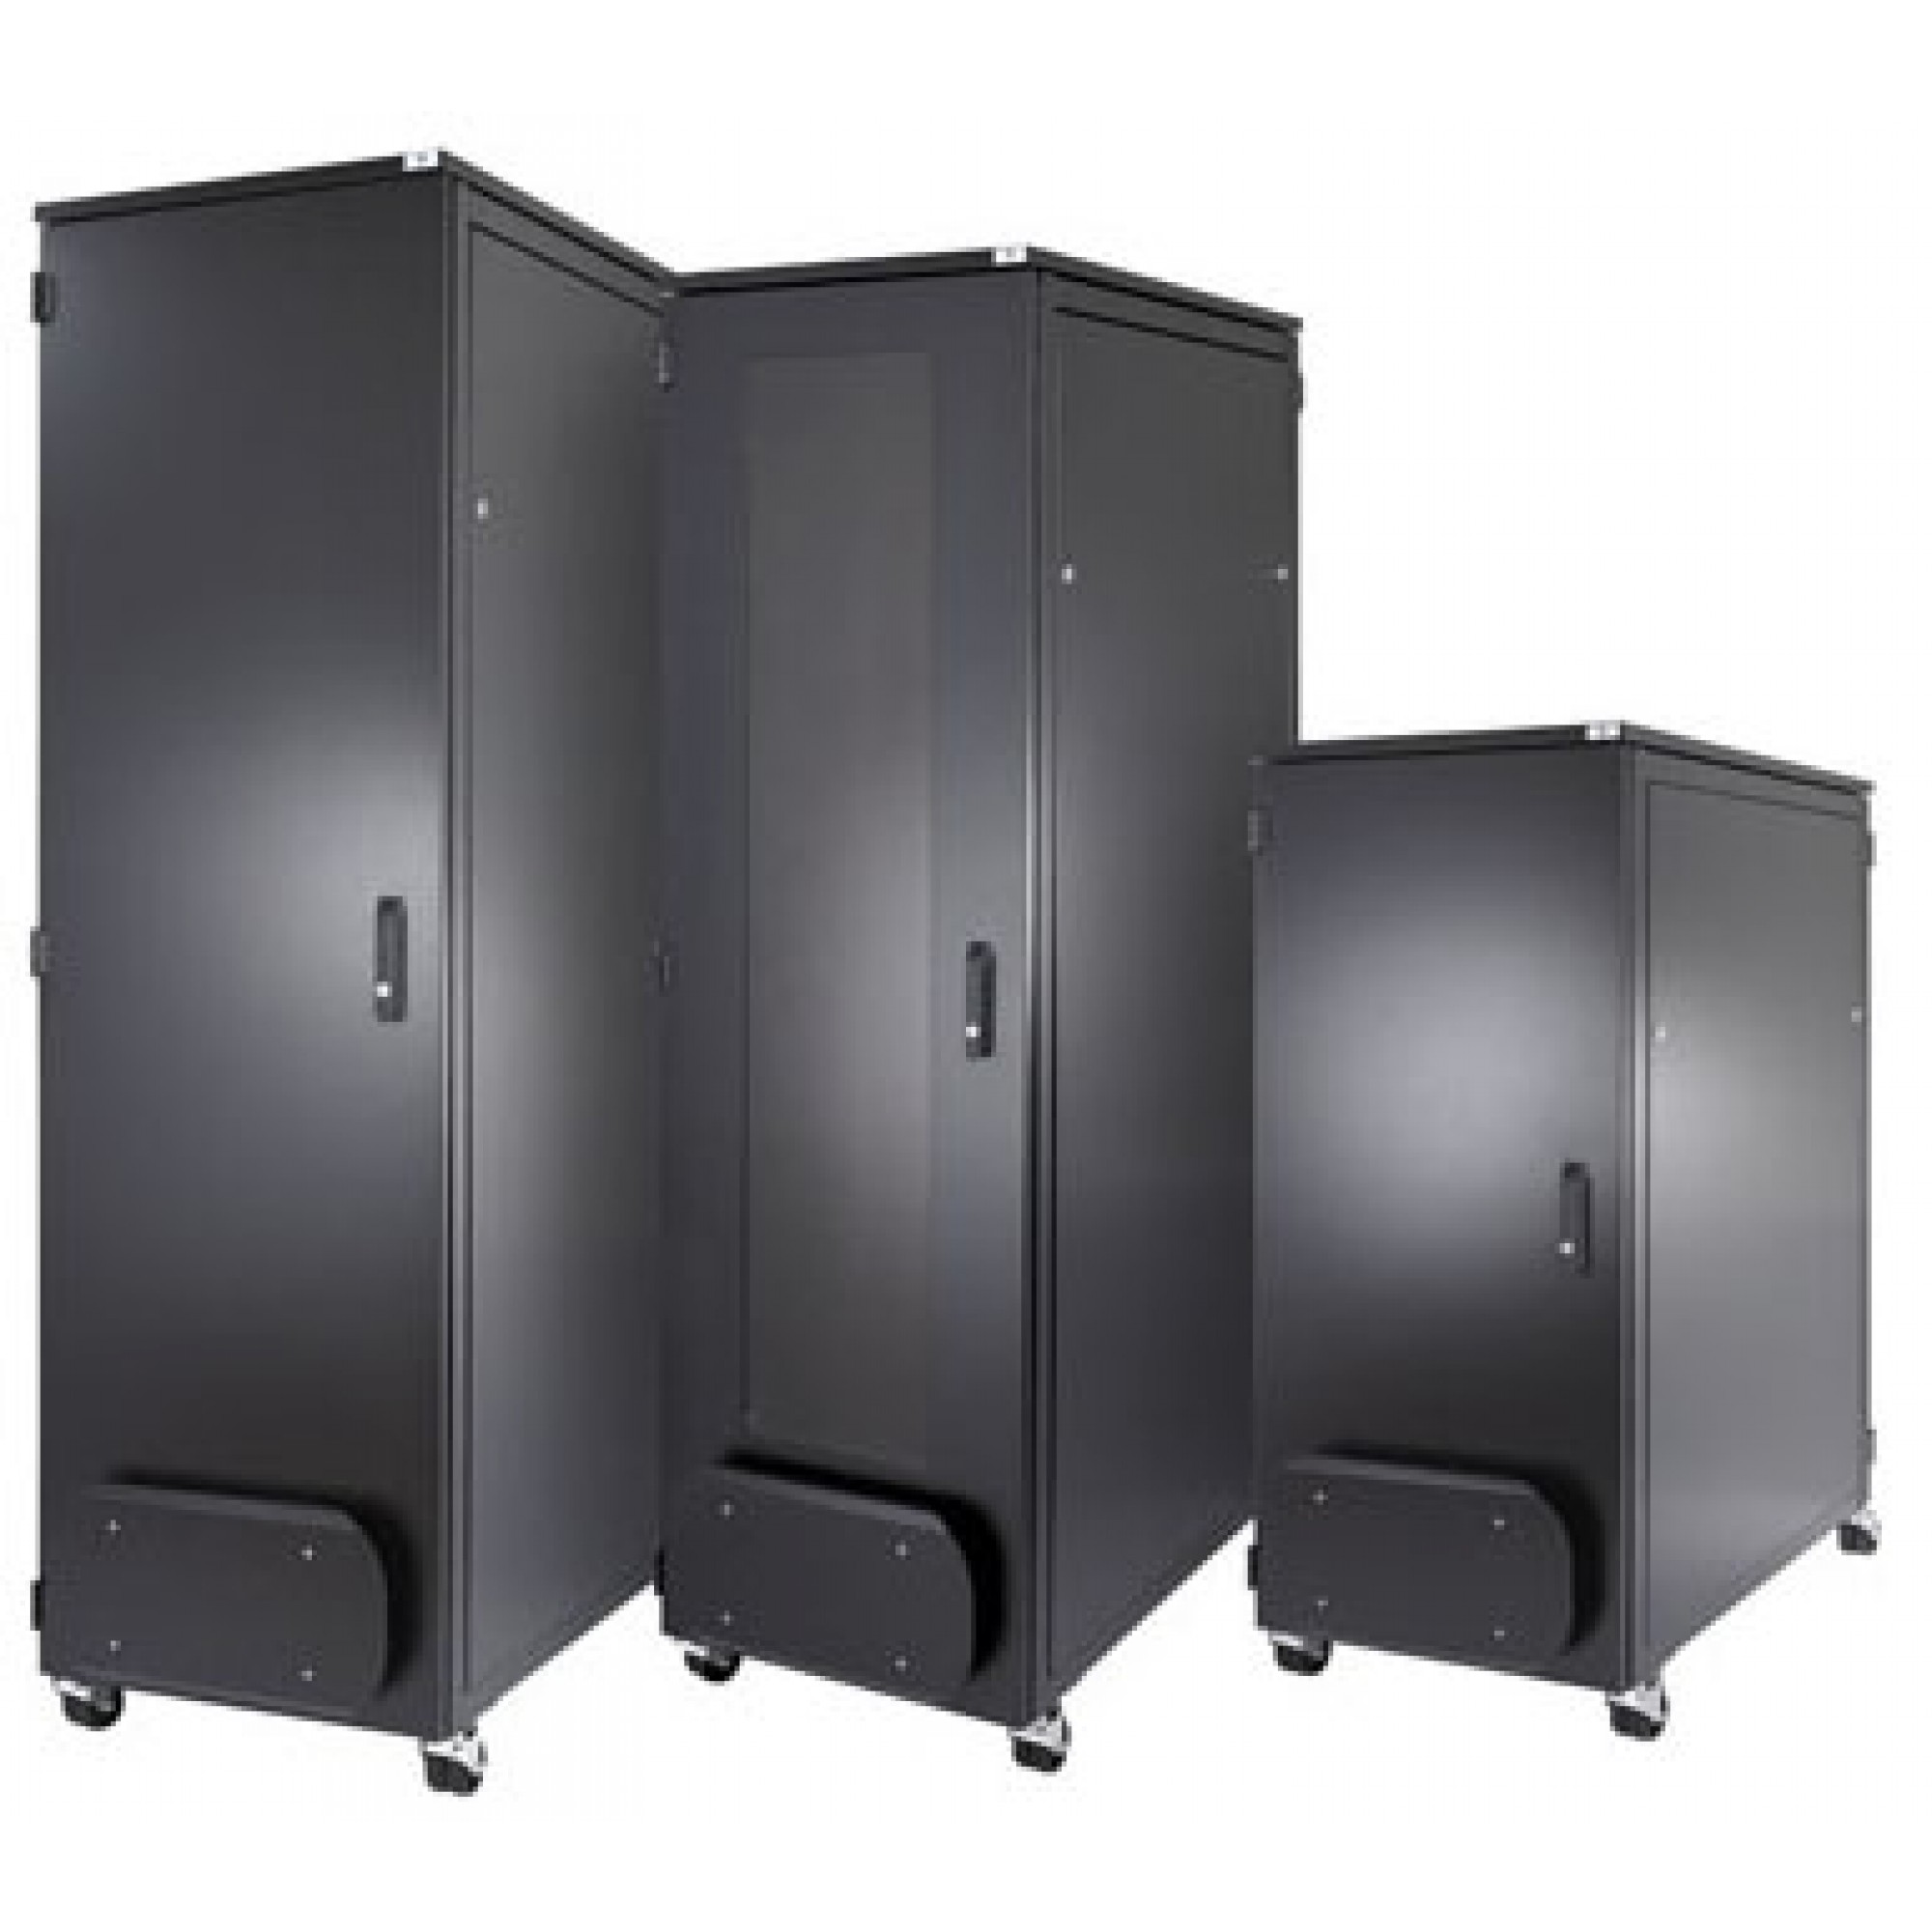 ABNET Cabinet 36U-800, gồm 2 quạt, 1 ổ cắm 6 Outlet 36U800